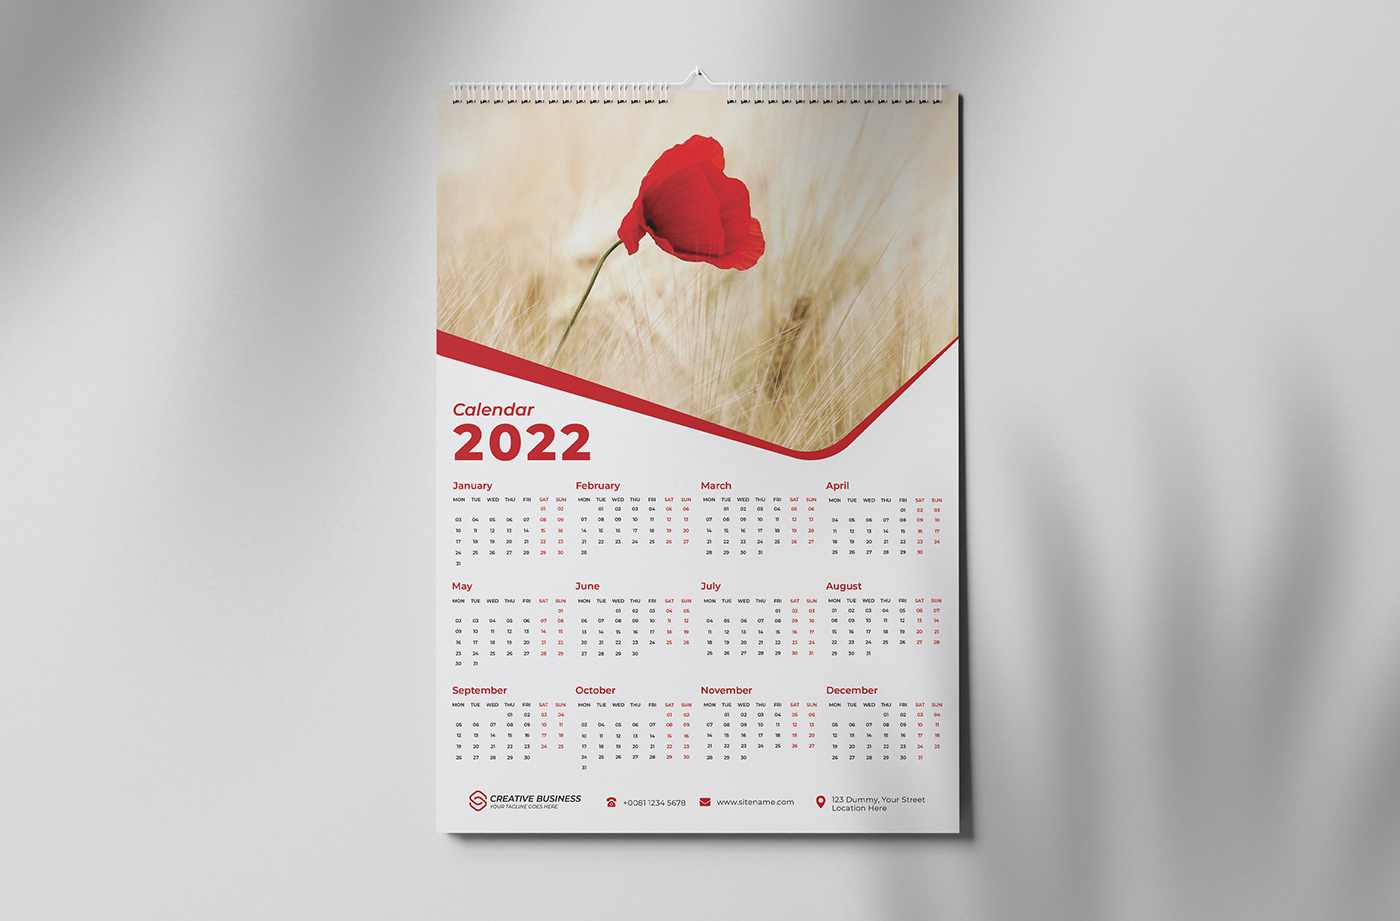 2022 Calendar calendar Calendar 2022 calendar design happy new year New Calendar wall calendar